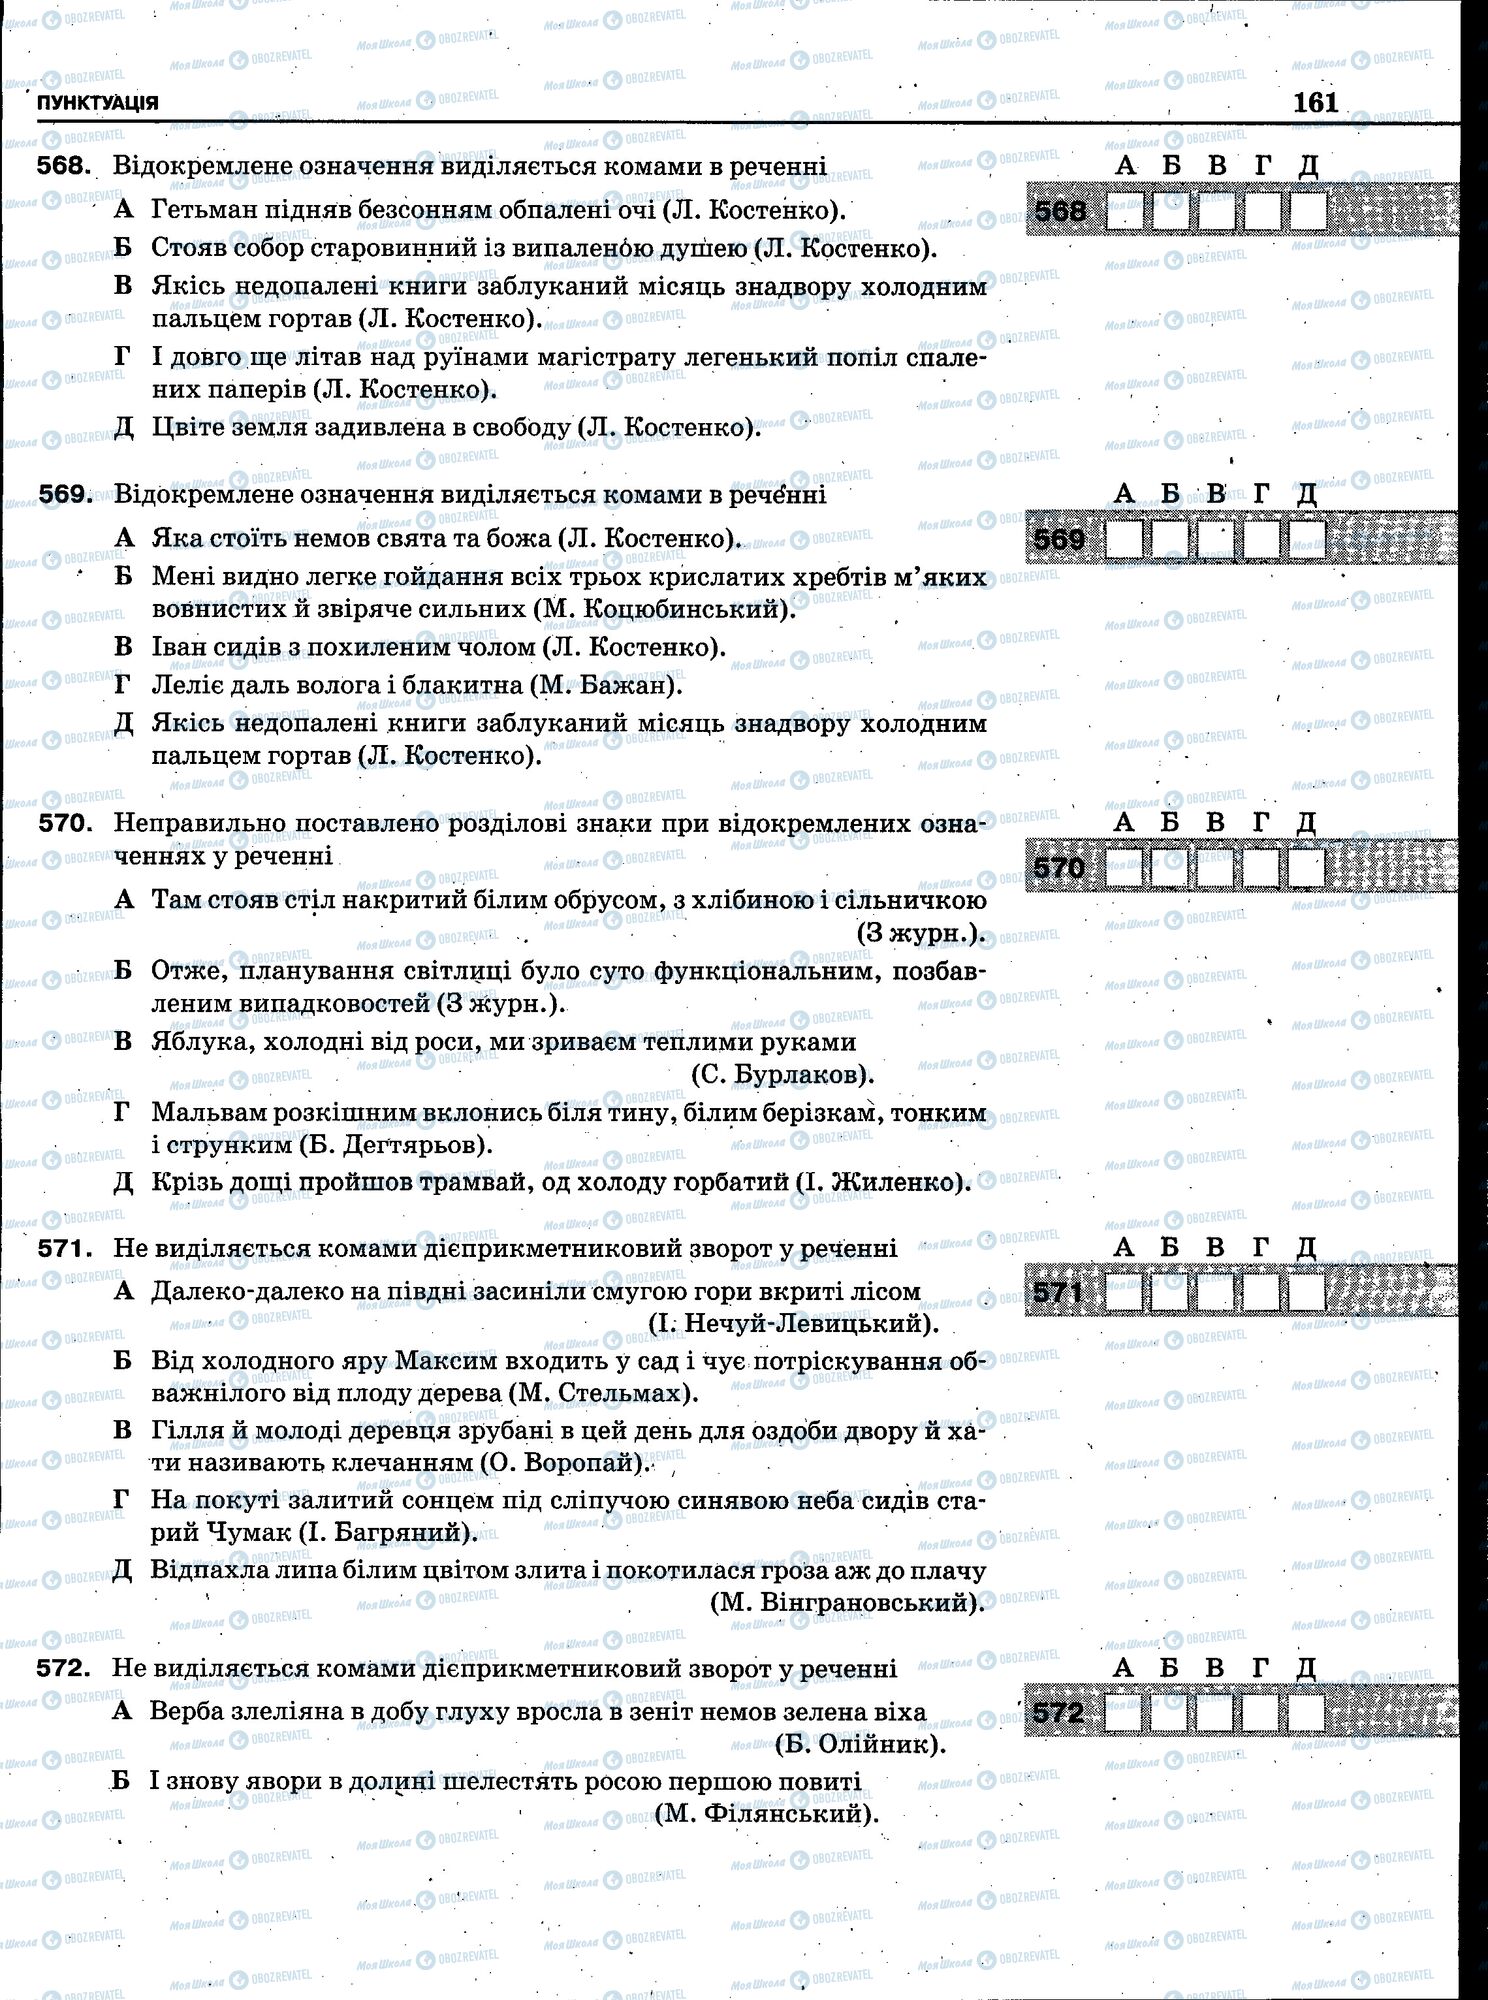 ЗНО Укр мова 11 класс страница 159